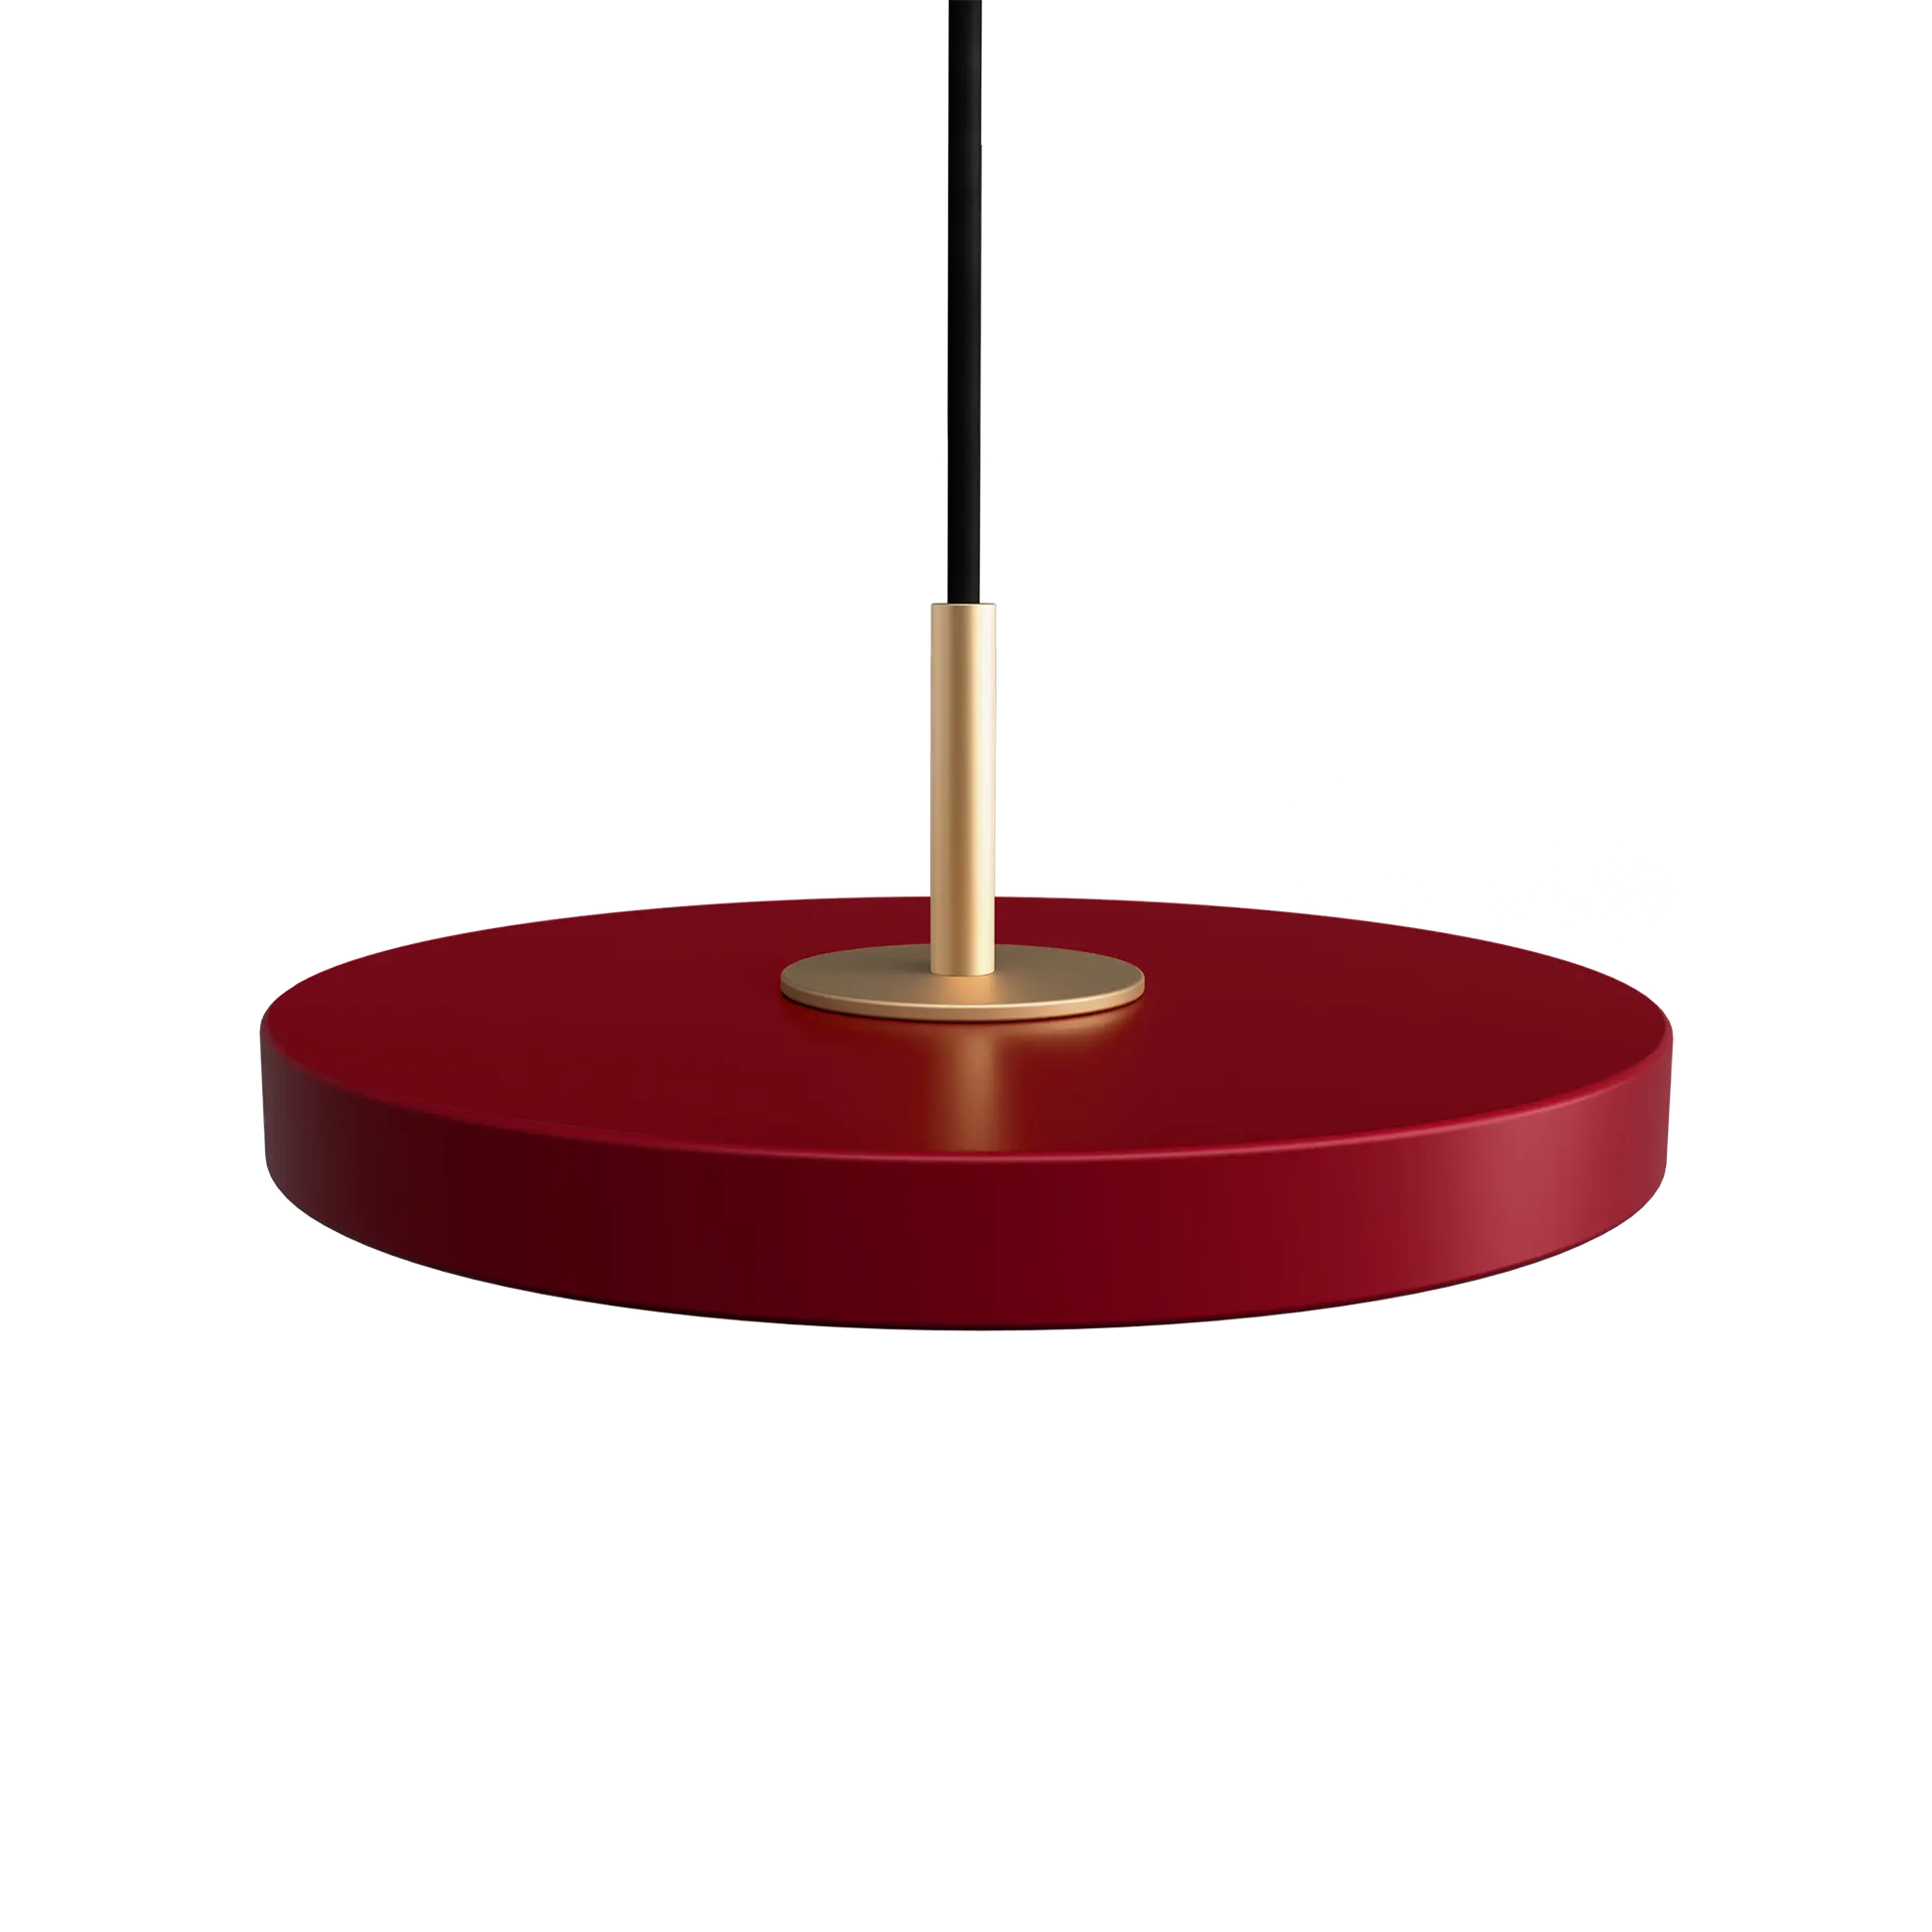 Taklampa Asteria Micro från Umage Ruby Red med toppdel i mässing